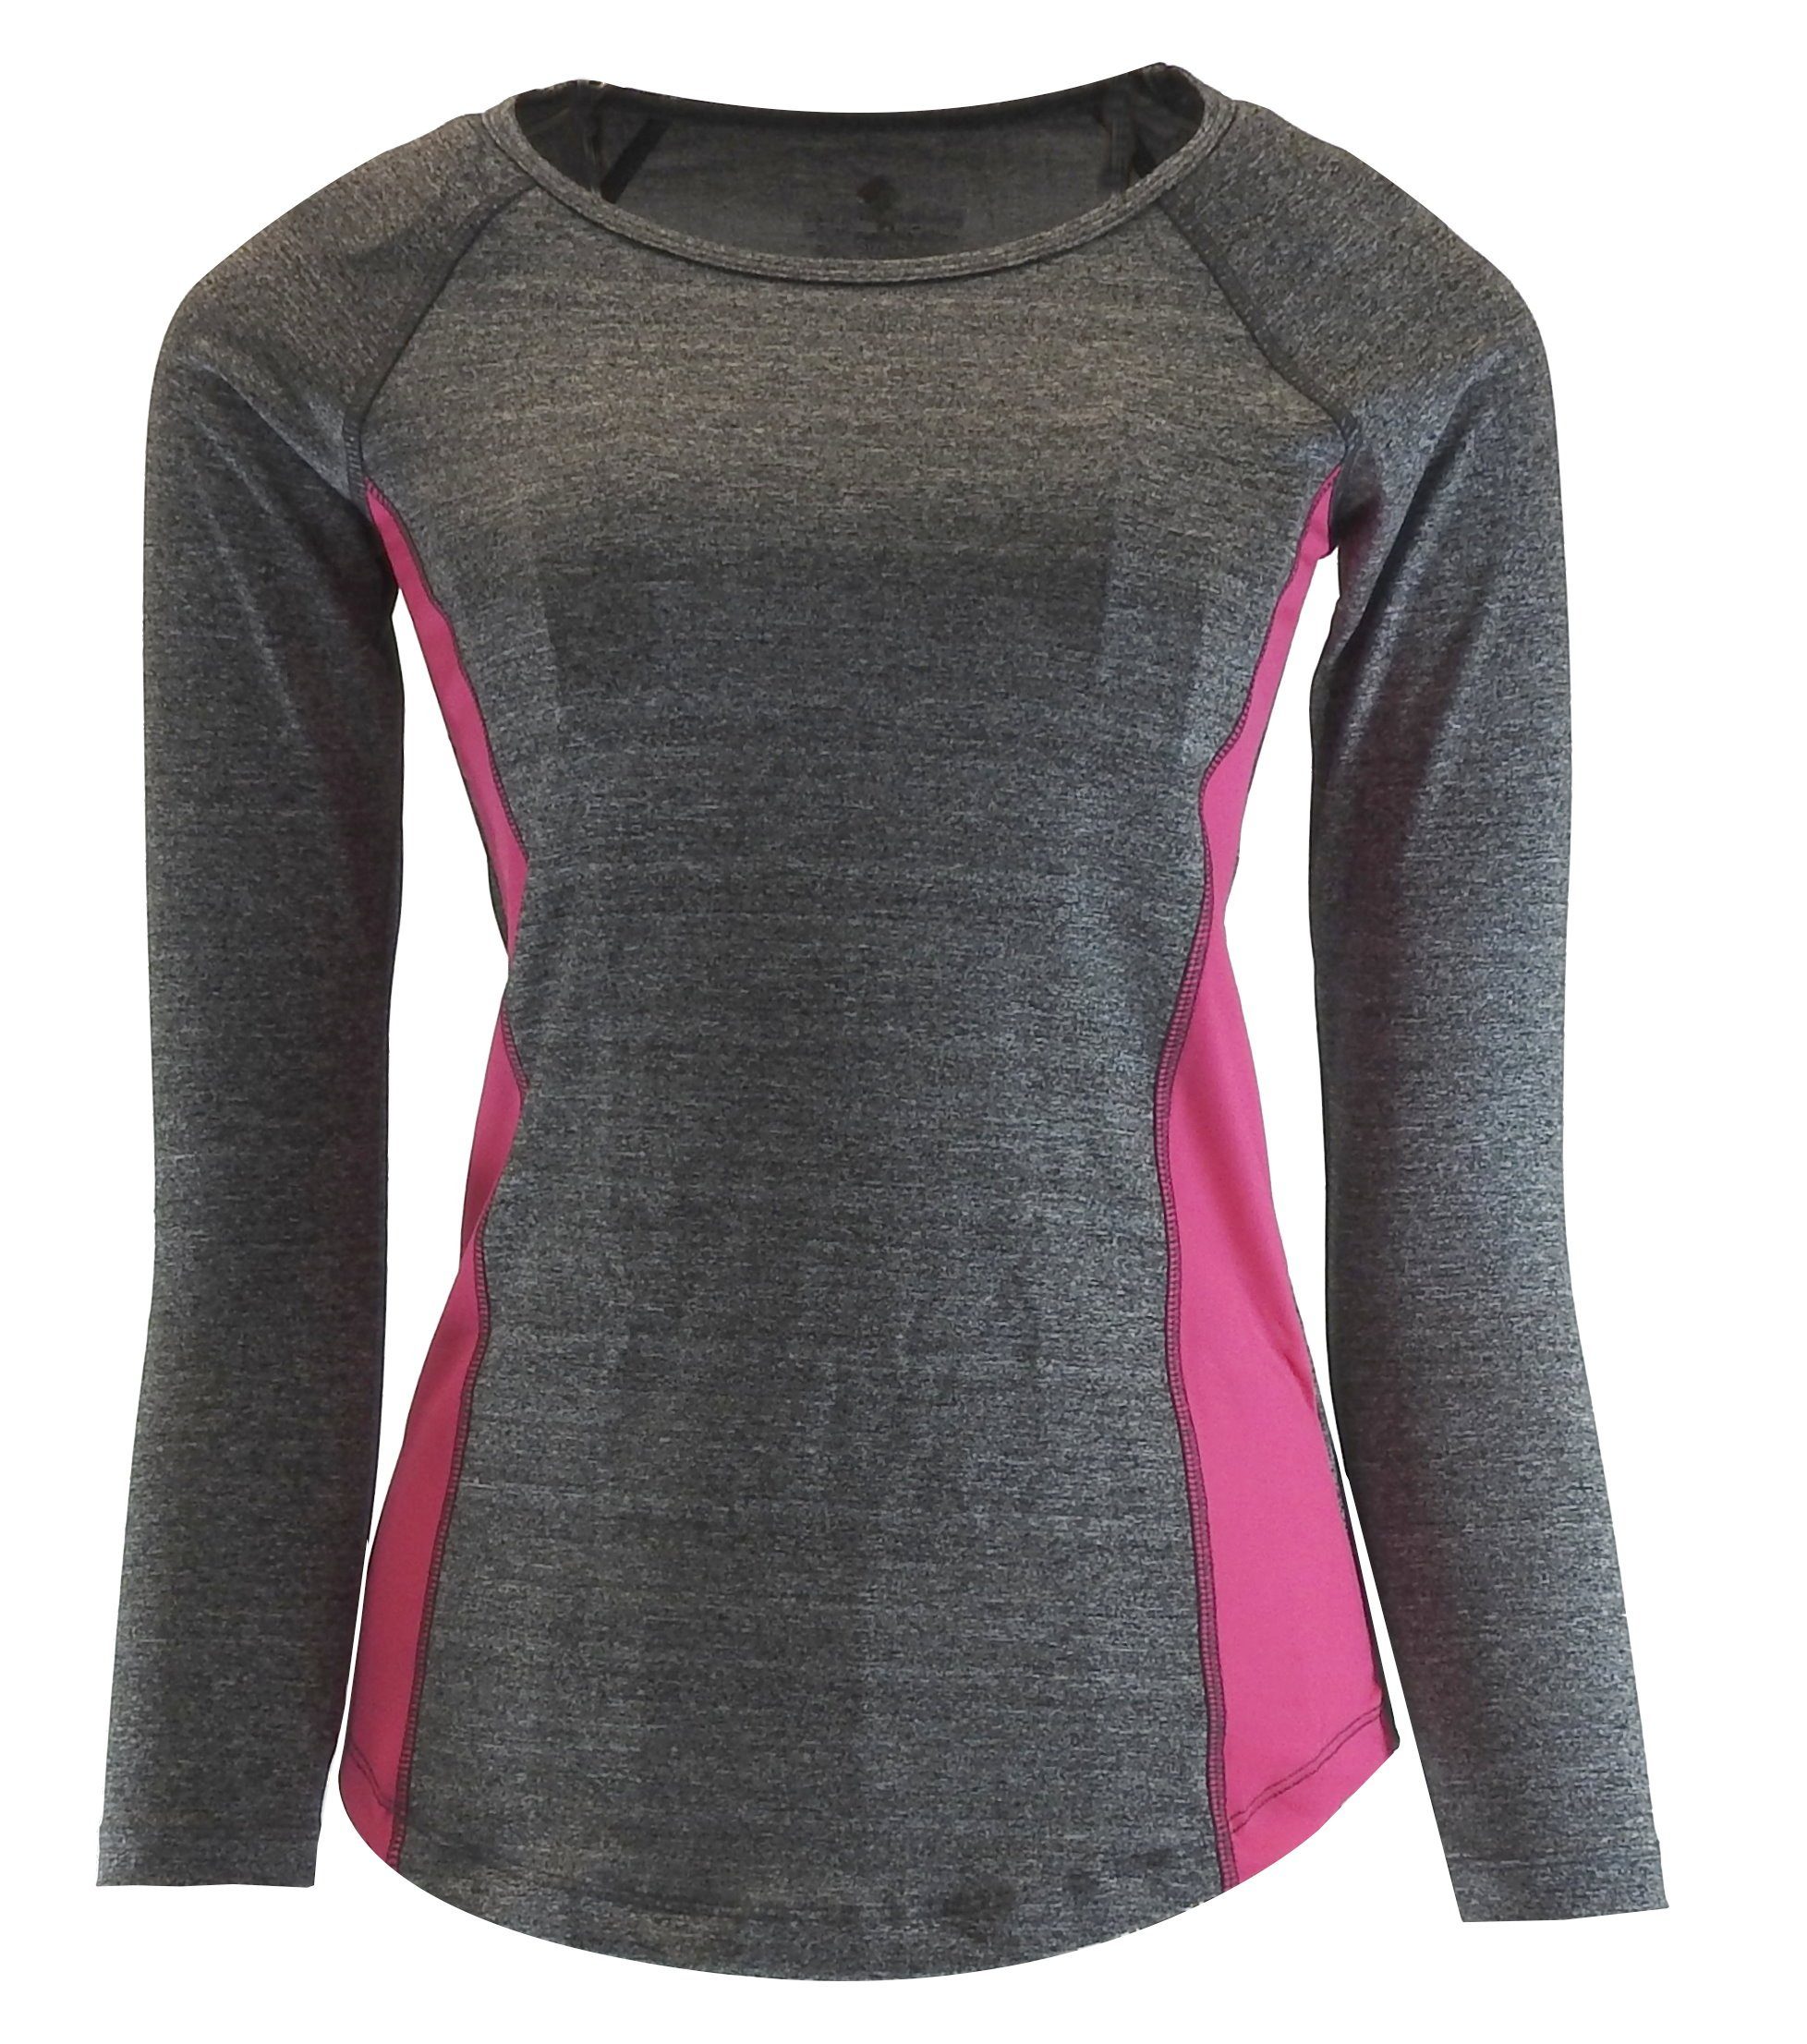 dynamic24 Laufshirt Damen Funktionsshirt Sport Fitness Funktion Langarm  Shirt Unterwäsche online kaufen | OTTO